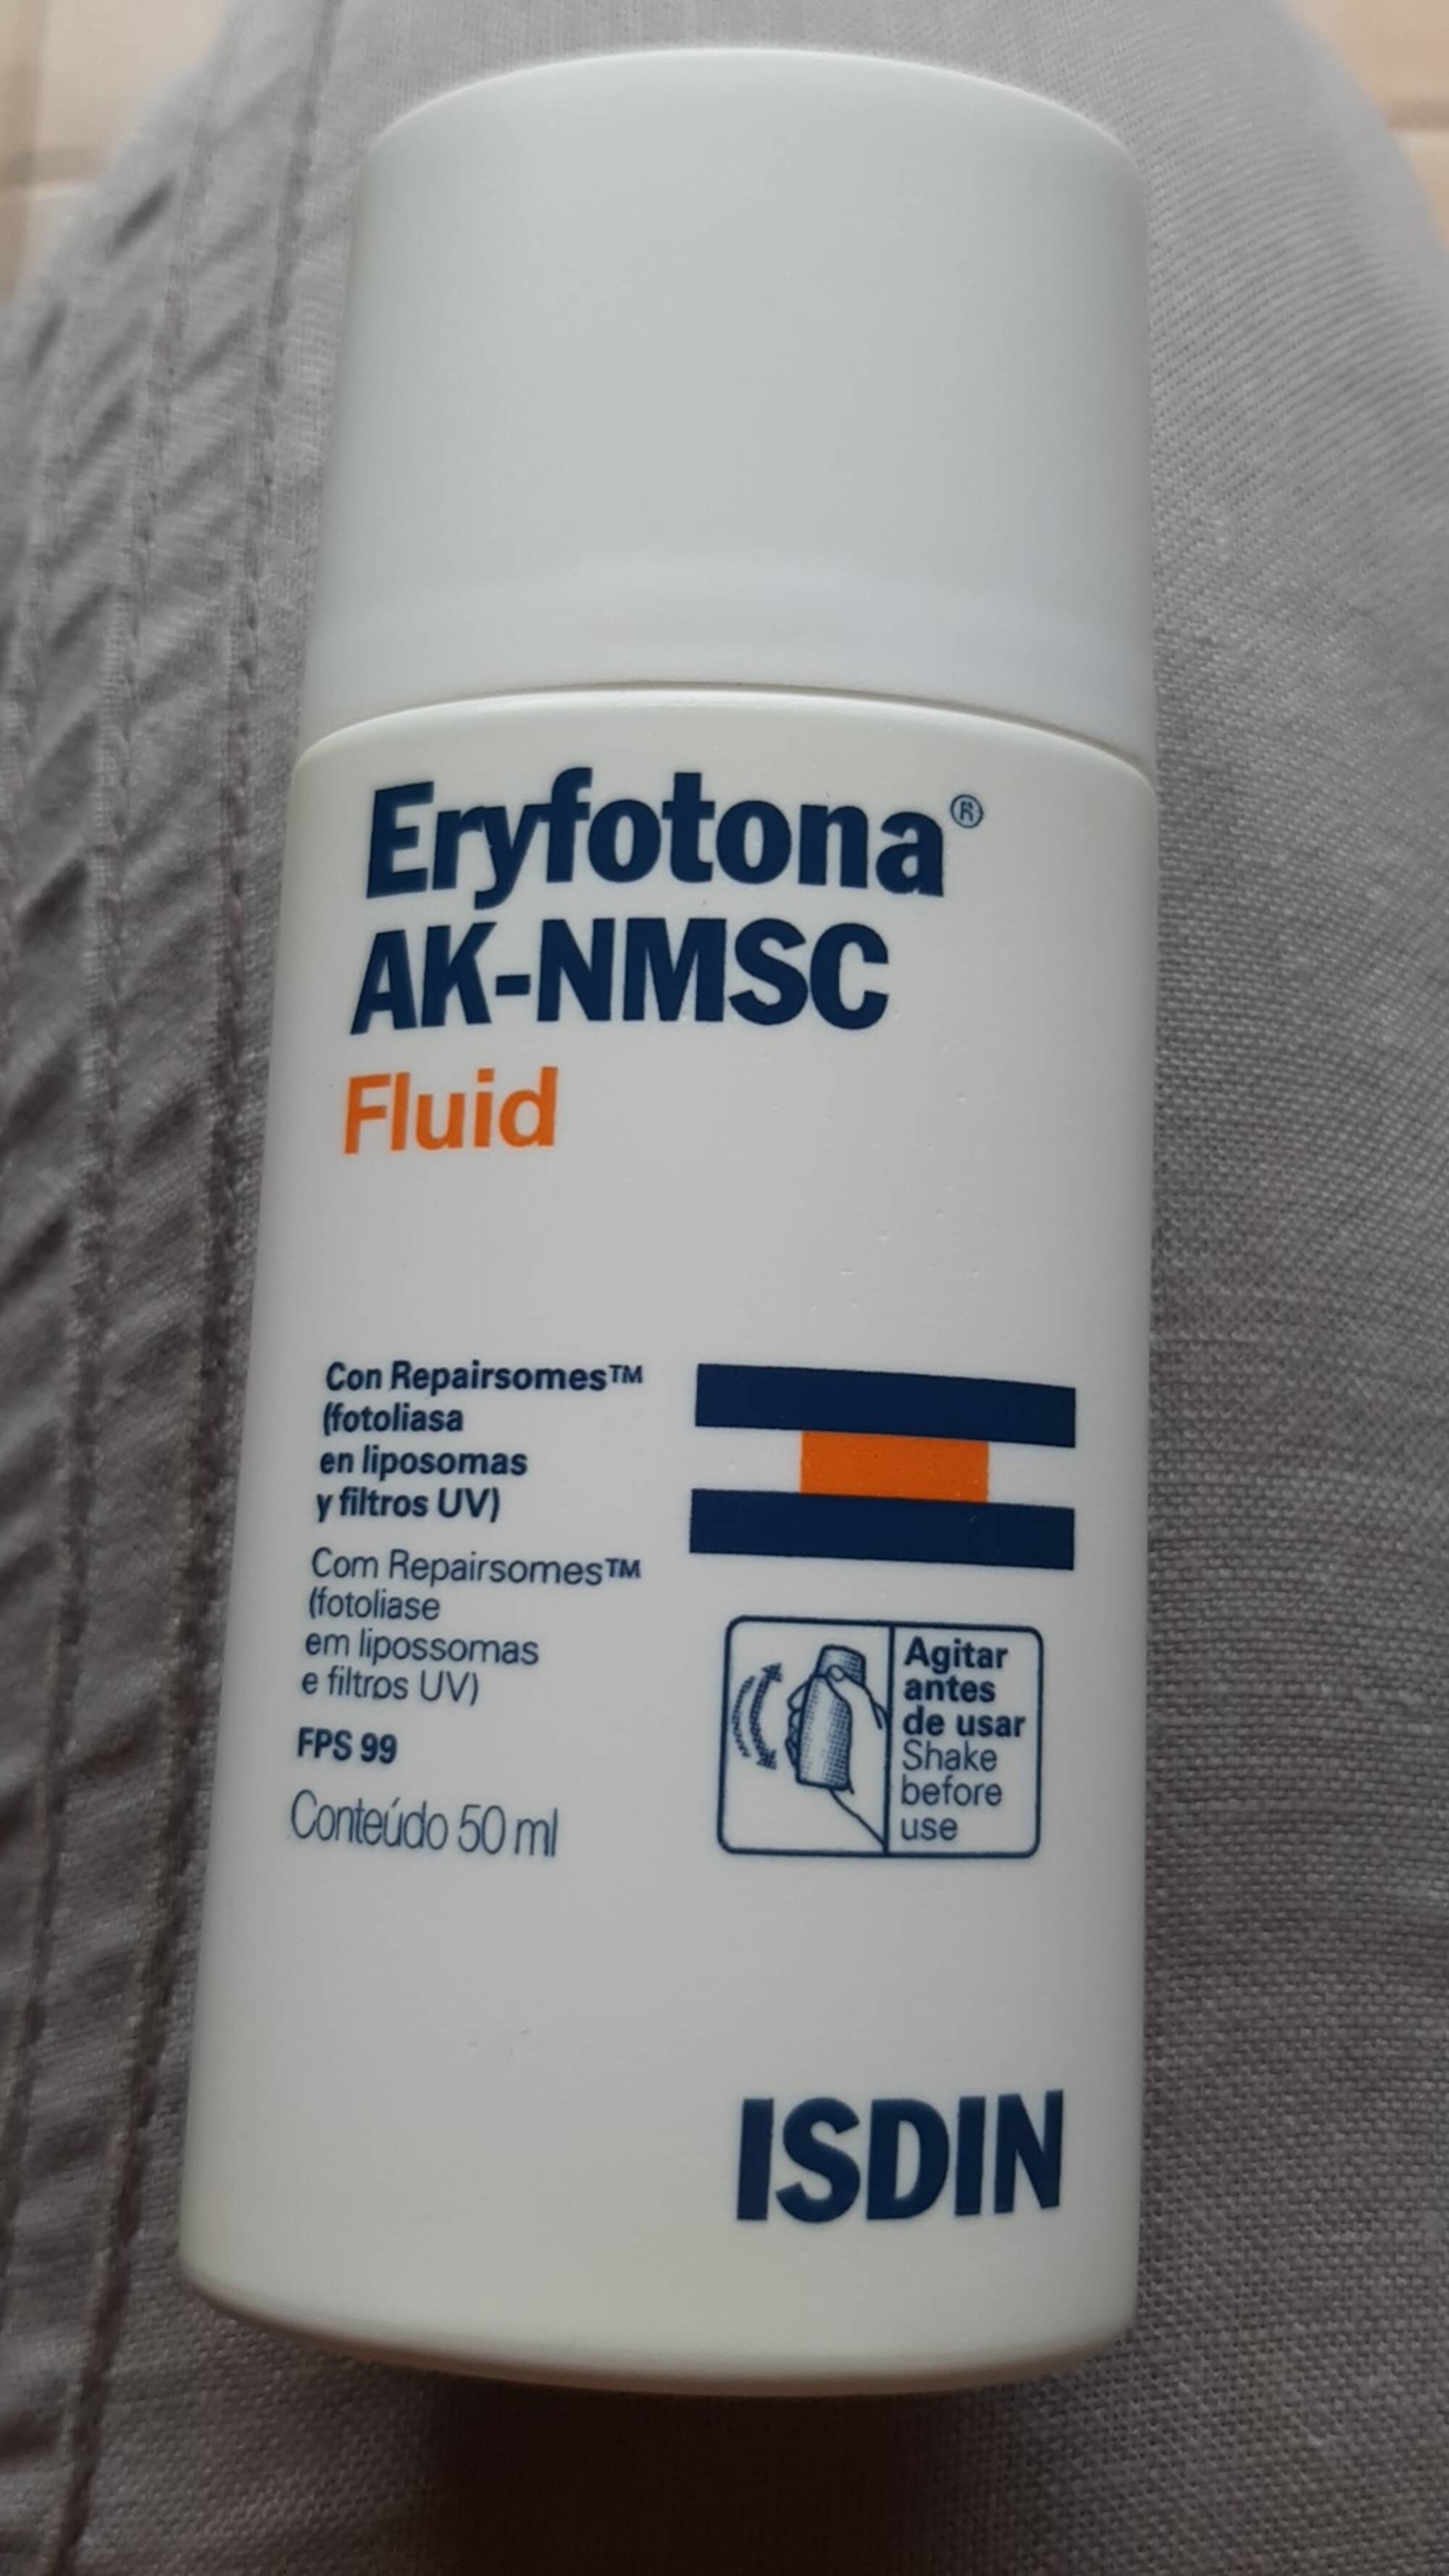 ISDIN - Eryfotona AK-NMSCF fluid